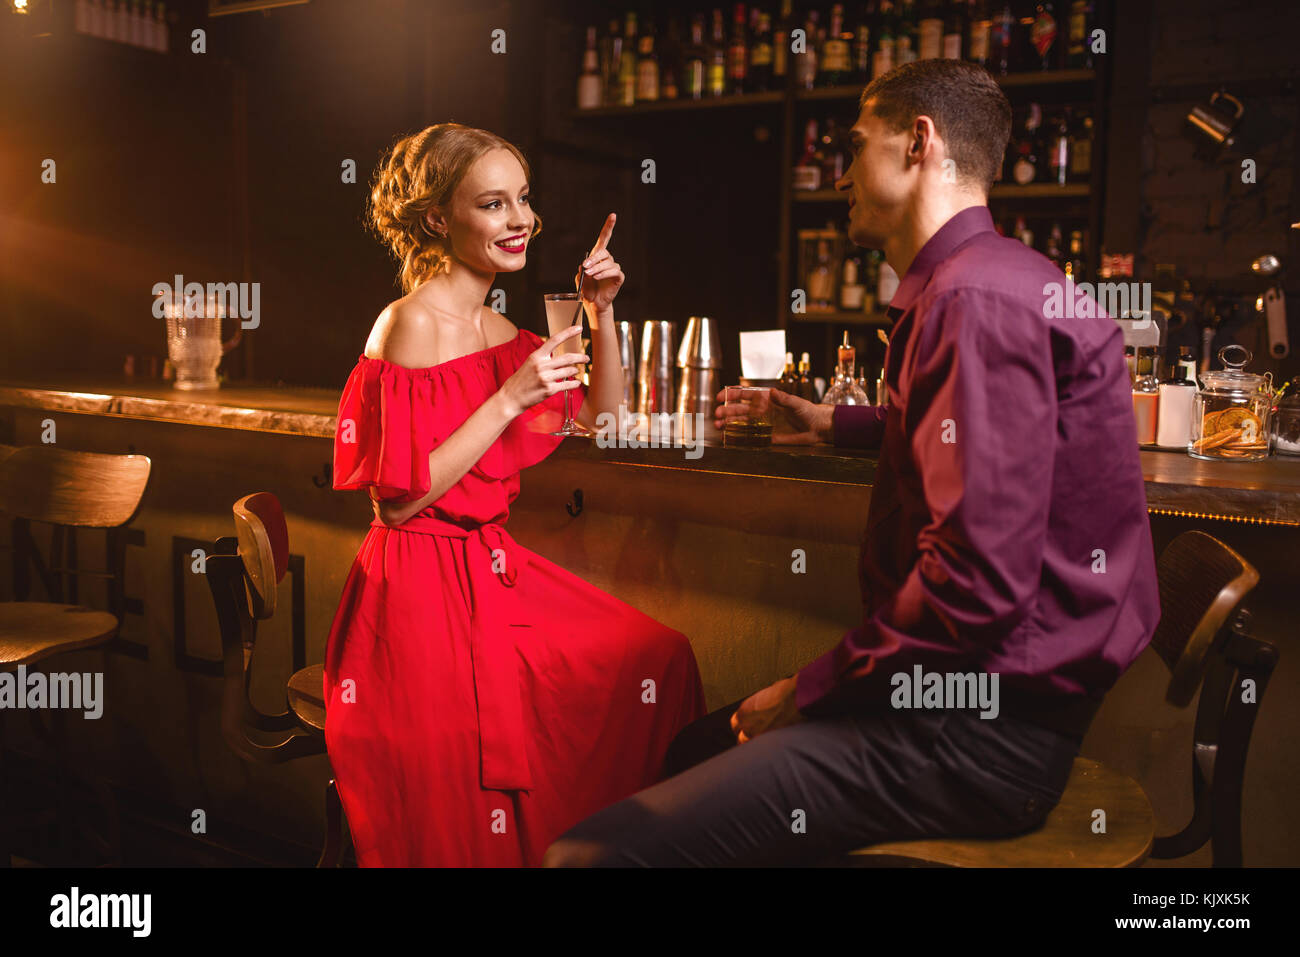 Datum im Nachtclub, attraktive Frau im roten Kleid flirtet mit Mann gegen  bar-Zähler im Nachtclub. Liebe Beziehung, Nacht lifestyle Stockfotografie -  Alamy